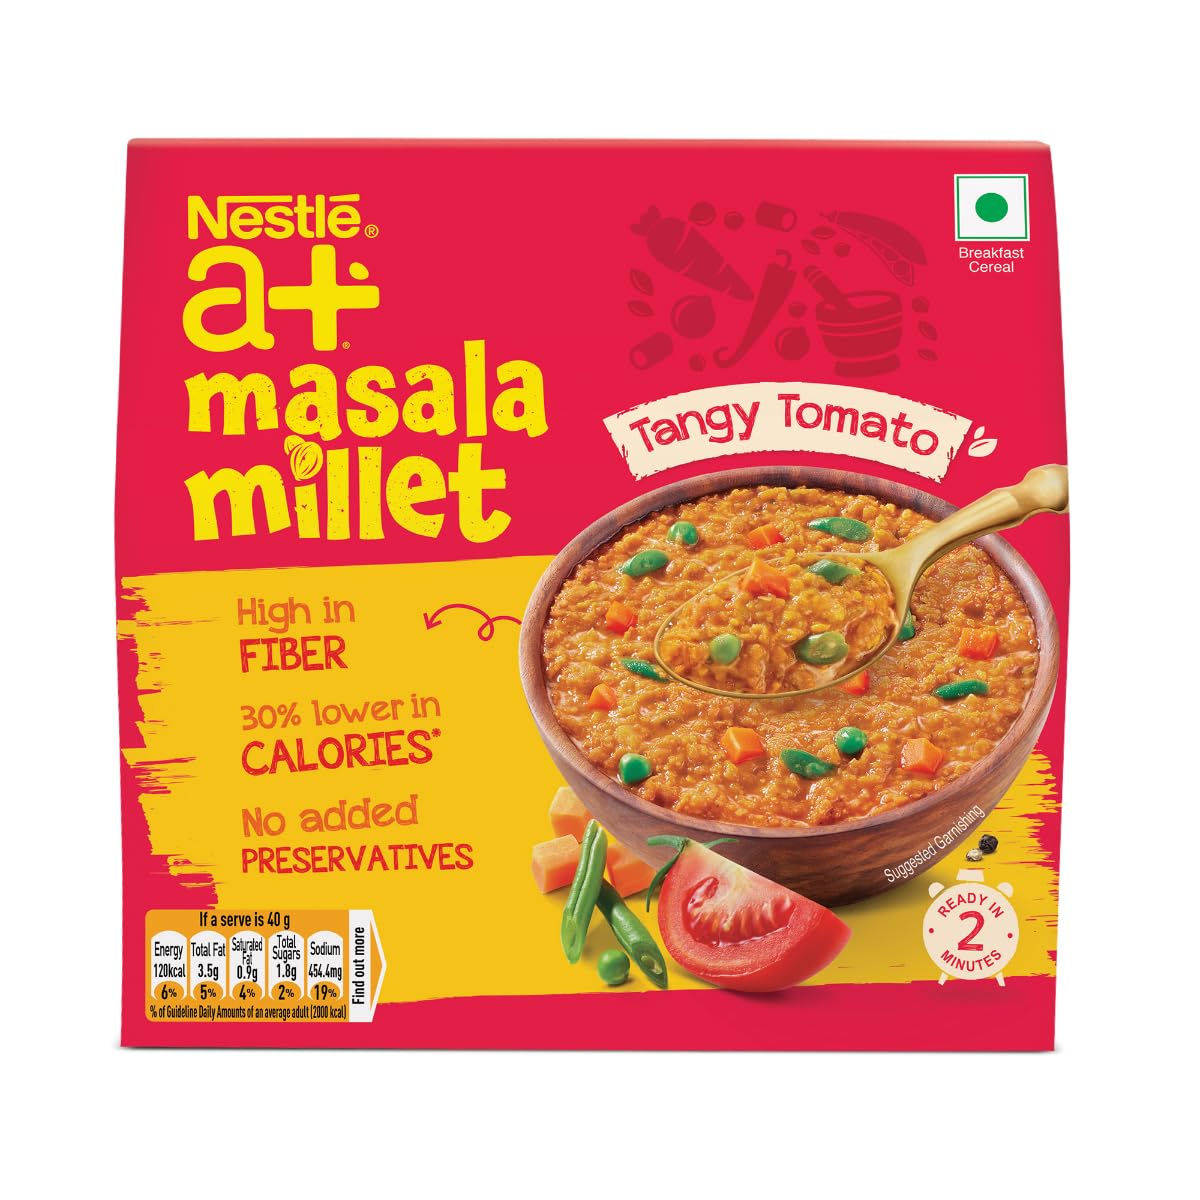 NESTLÉ a+ Masala Millet - Tomato, 240g